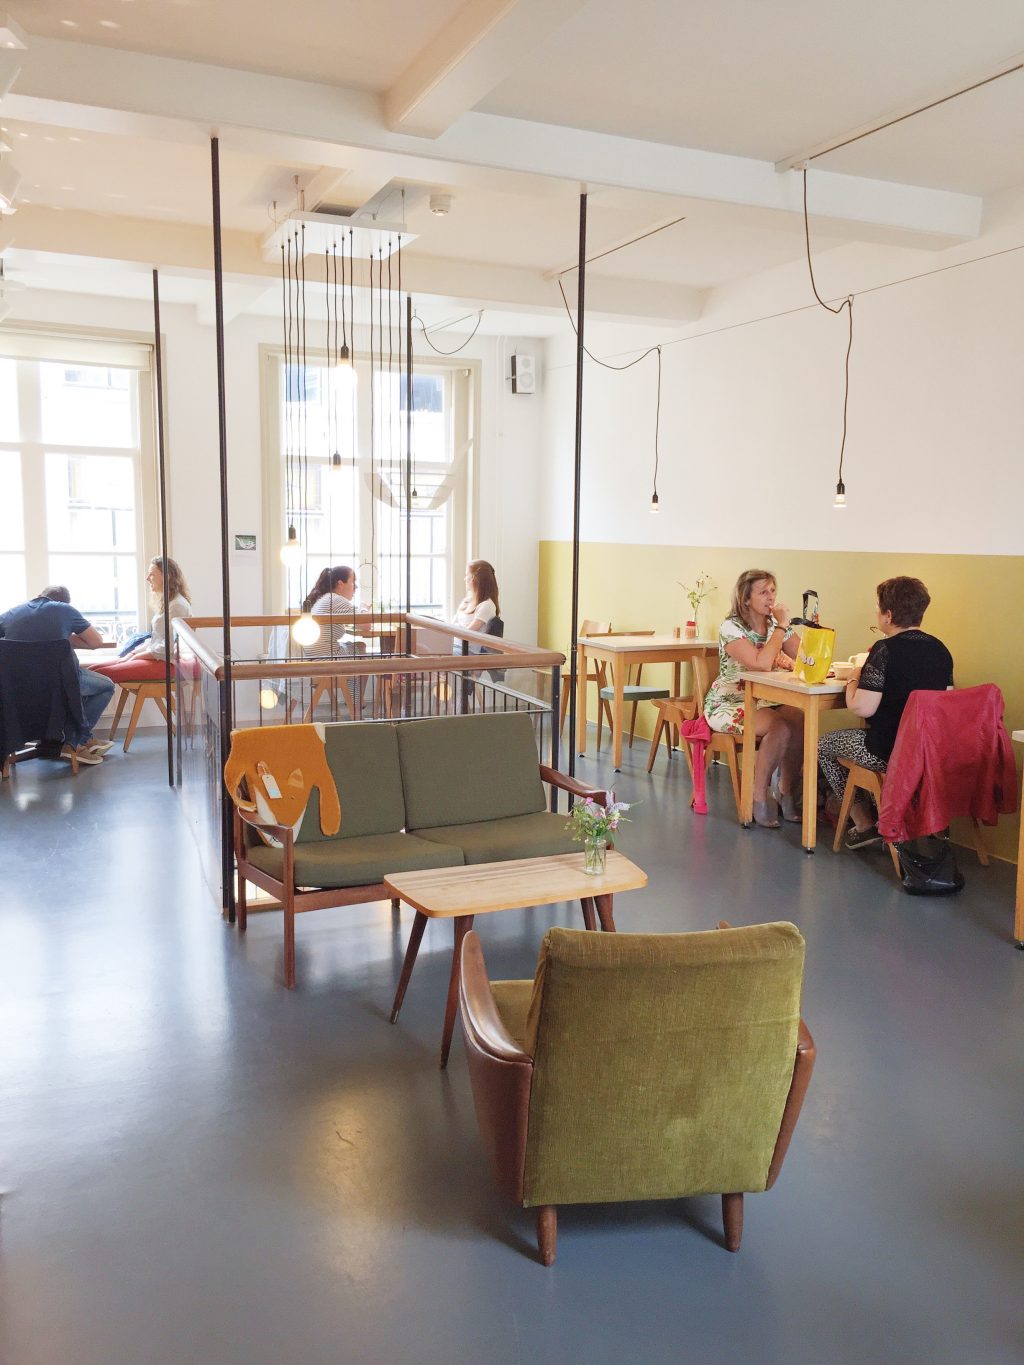 Restaurants Bergen op Zoom: 10x de lekkerste hofspots made by ellen